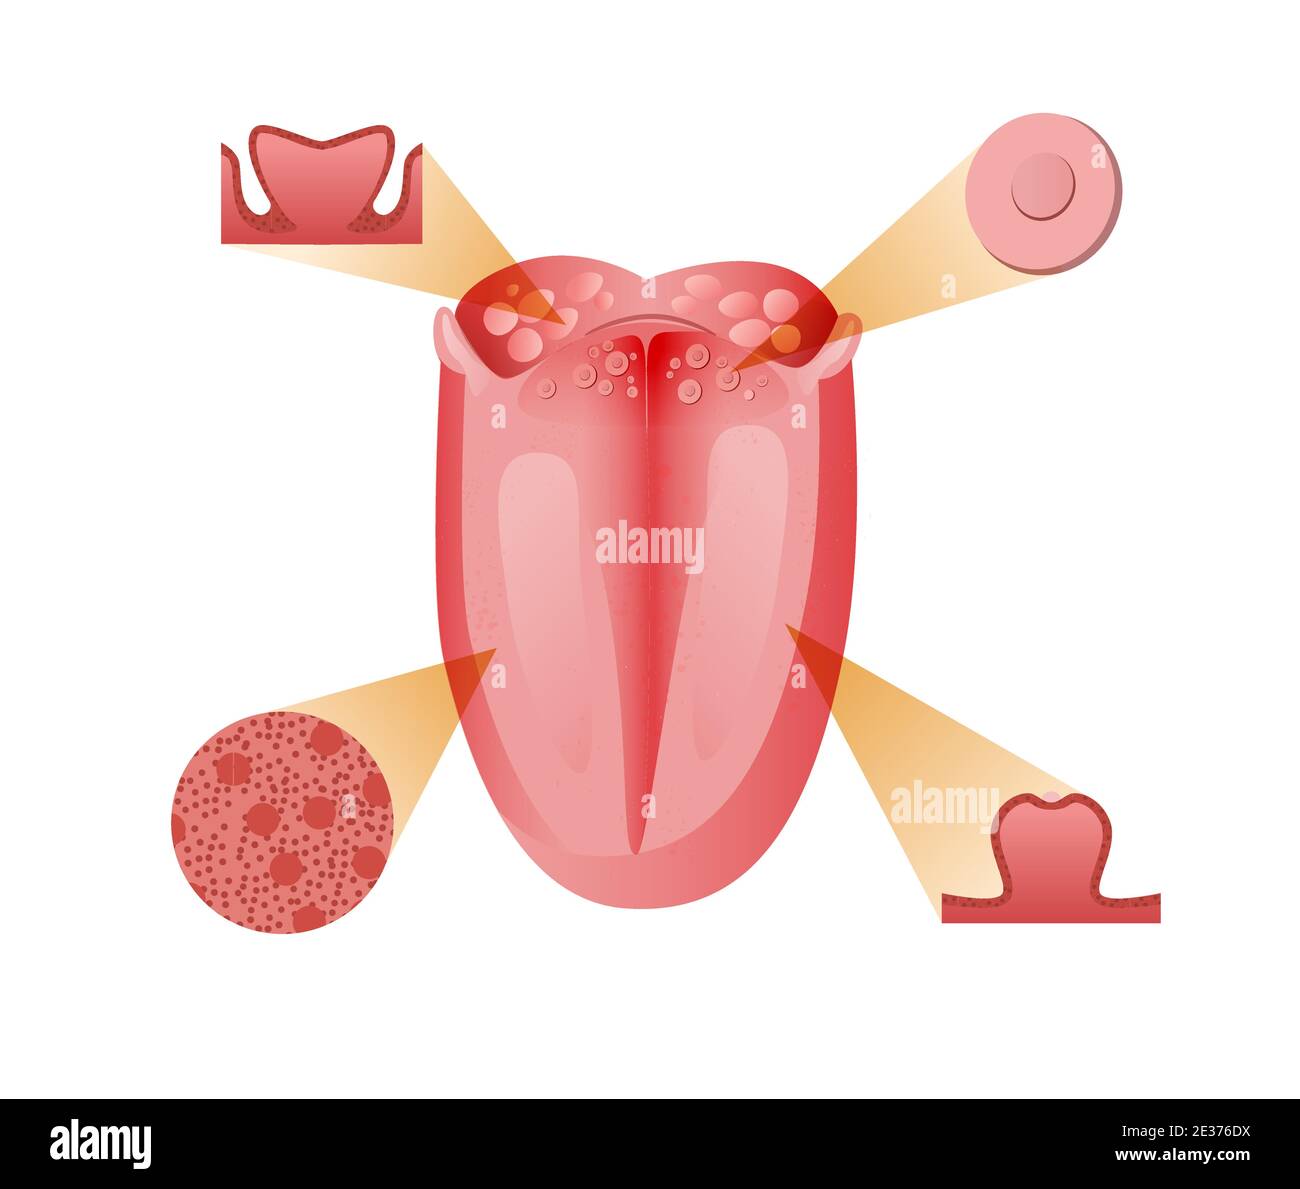 Hauptrezeptoren und Zellen Zunge. Basis Bitter Sensation Rezeptor mit schematischem sauer-rot-süßem und salzigem Geschmack. Stock Vektor